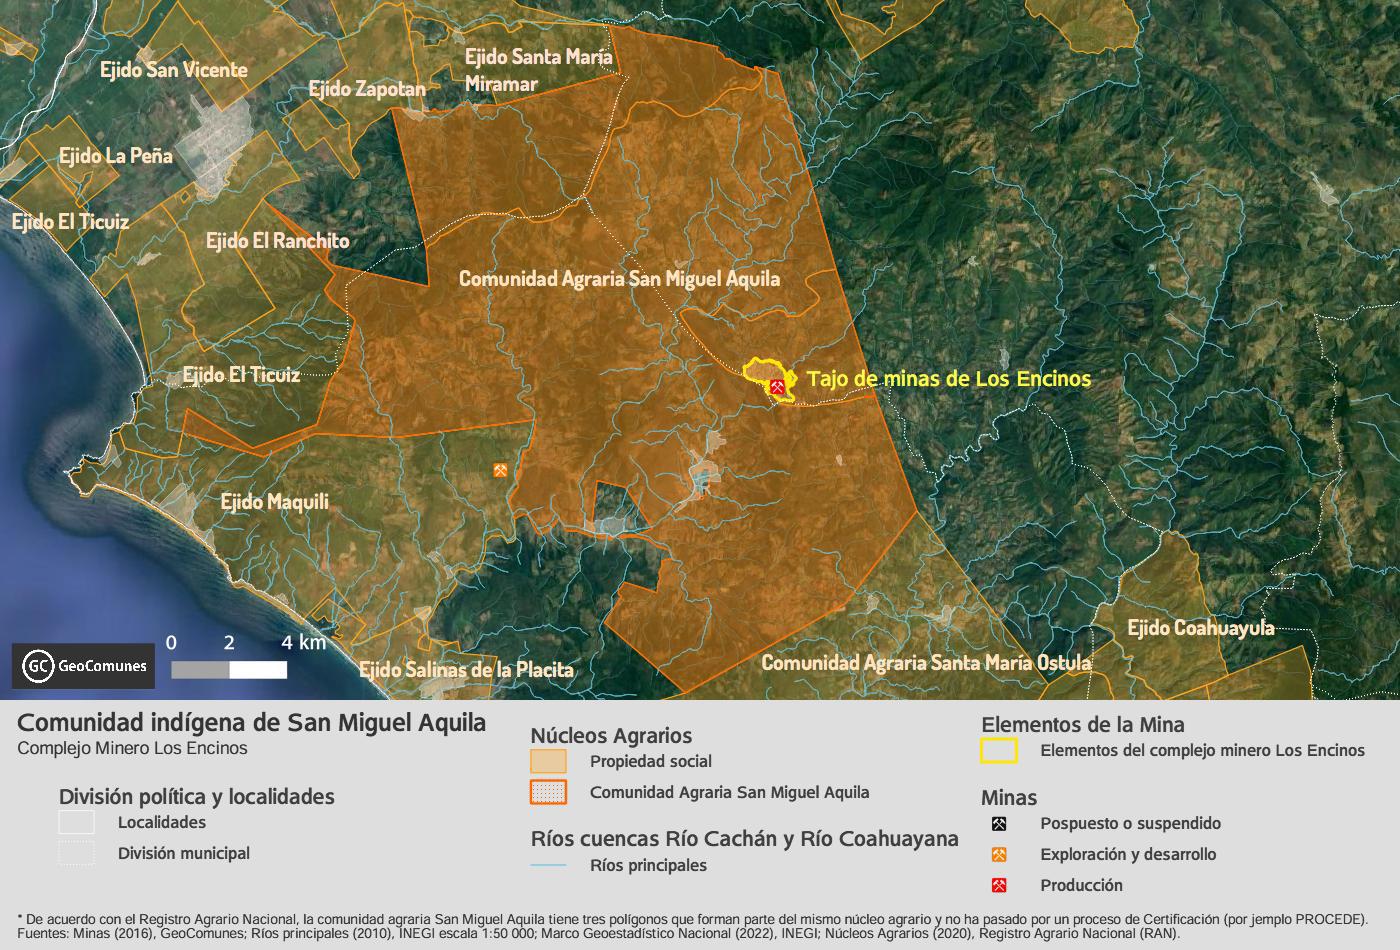 $!El complejo minero Los Encinos se localiza dentro del territorio de la comunidad indígena de San Miguel Aquila.